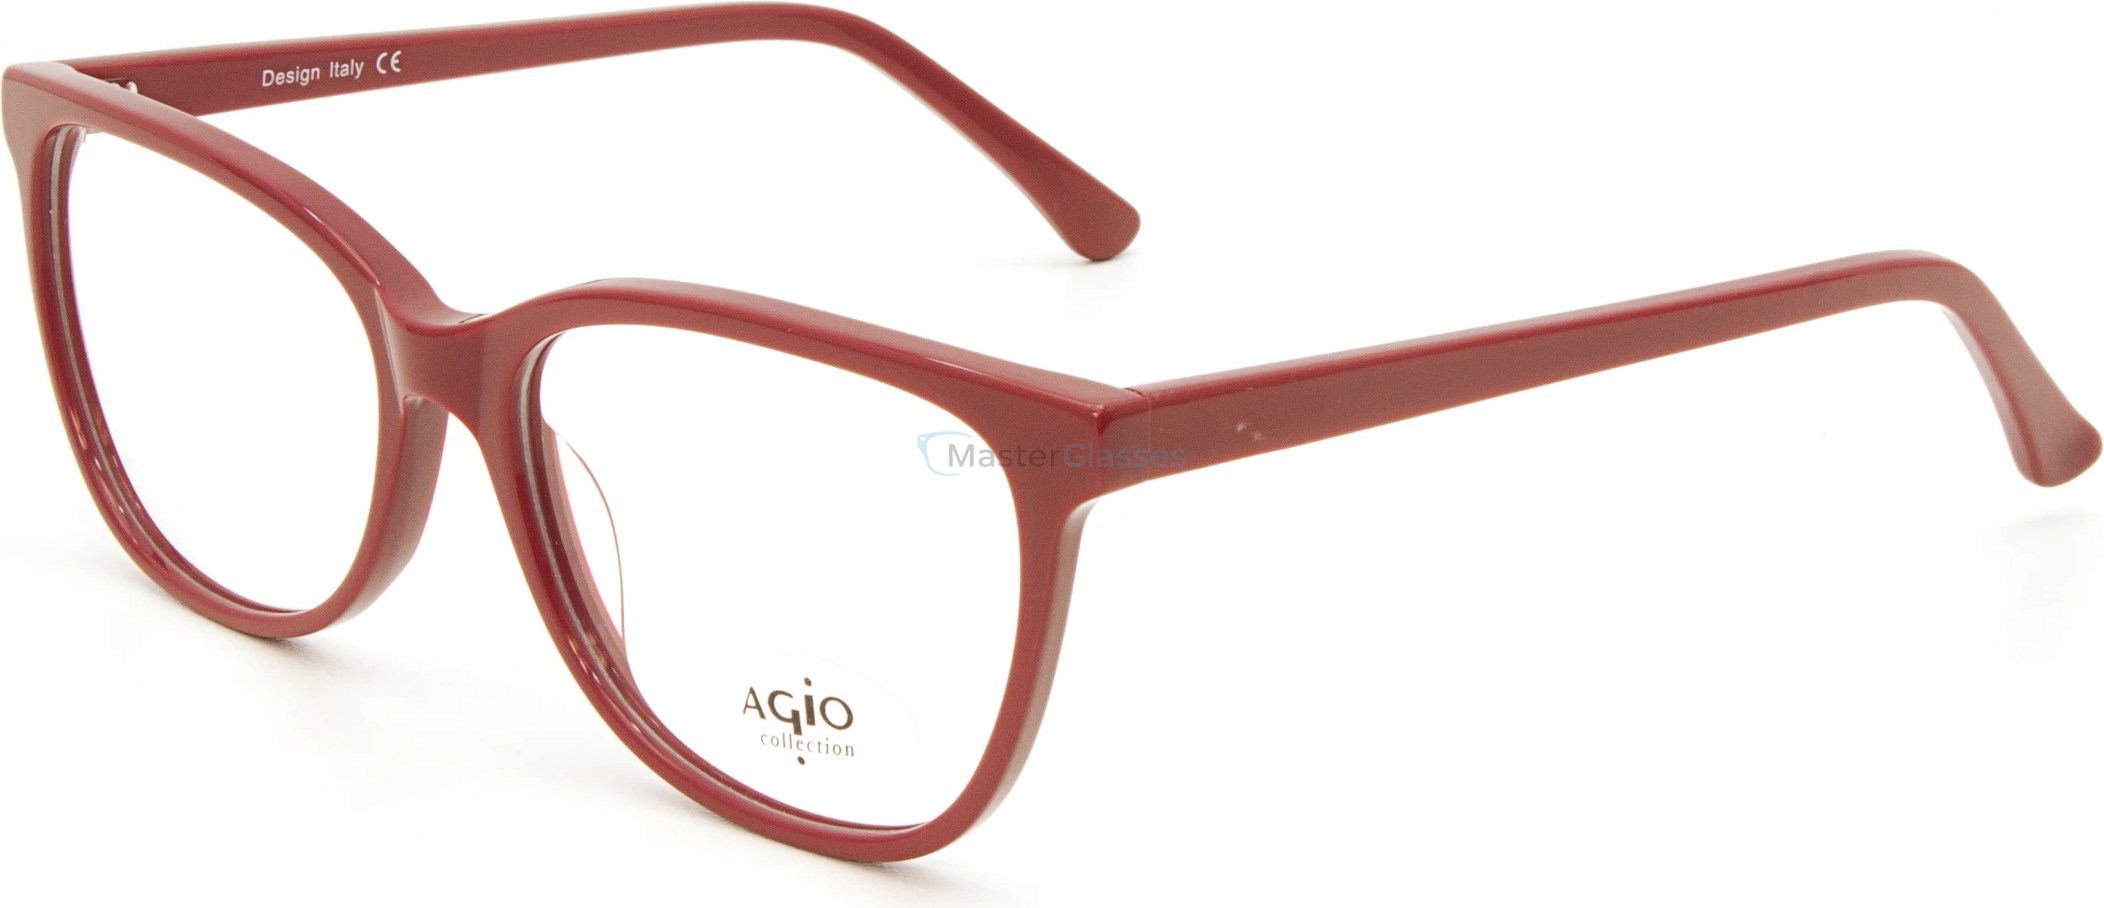  AGIO AG 60089P c2